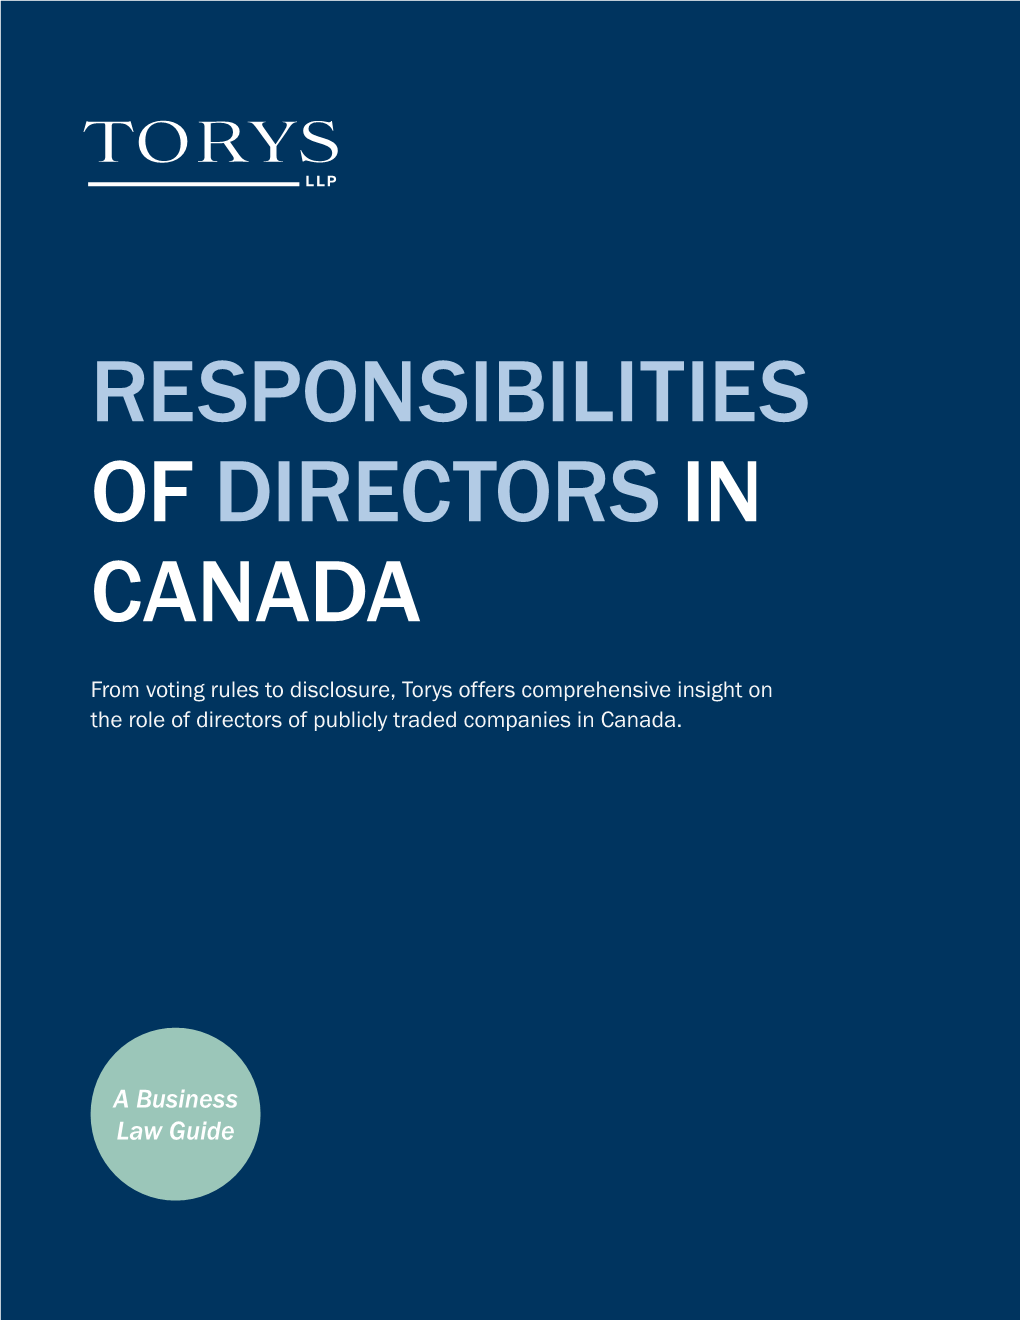 Responsibilities of Directors in Canada